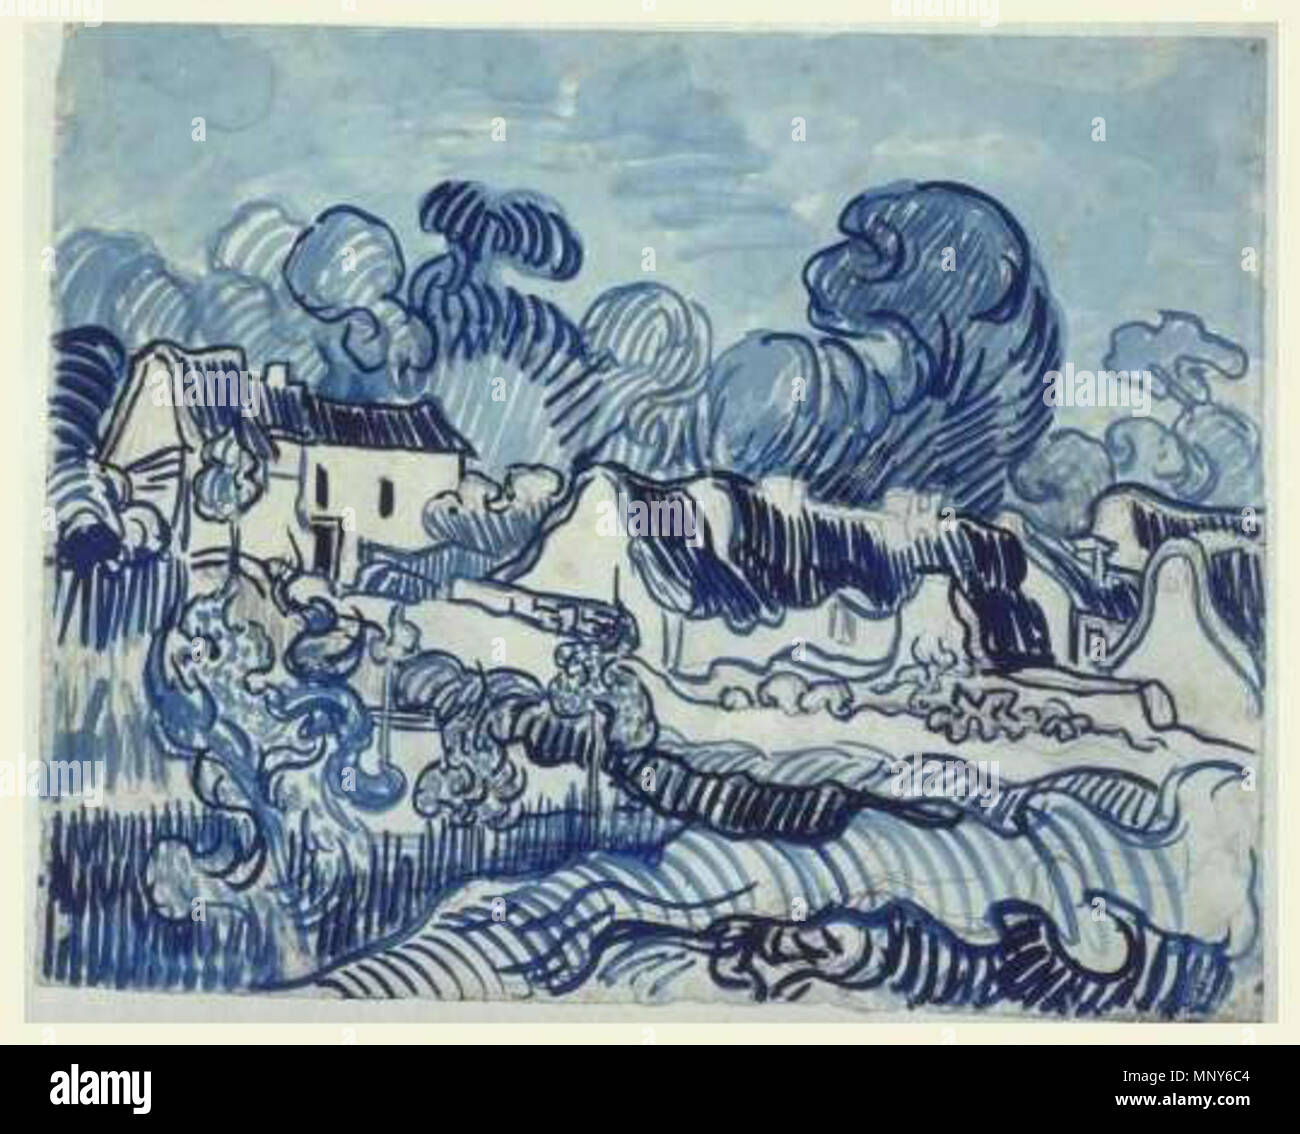 . Englisch: Vincent van Gogh - Landschaft mit Cottages" (1890, Van Gogh Museum). 12. Februar 2012. Vincent Van Gogh (1853 - 1890) Alternative Namen Vincent Willem van Gogh Beschreibung niederländischer Maler, Zeichner und Grafiker Geburtsdatum / Tod 30. März 1853 vom 29. Juli 1890 Ort der Geburt / Todes Zundert Auvers-sur-Oise Arbeiten Zeitraum zwischen ca. 1880 und ca. Juli 1890 Arbeitsort Niederlande (Etten, Den Haag, Nuenen, …, vor 1886), Paris (von 1886 bis 1887), Arles (von 1888 bis 1889), Saint-Rémy-de-Provence (ab 1889 bis 1890), Auvers-sur-Oise (1890) Behörde c Stockfoto